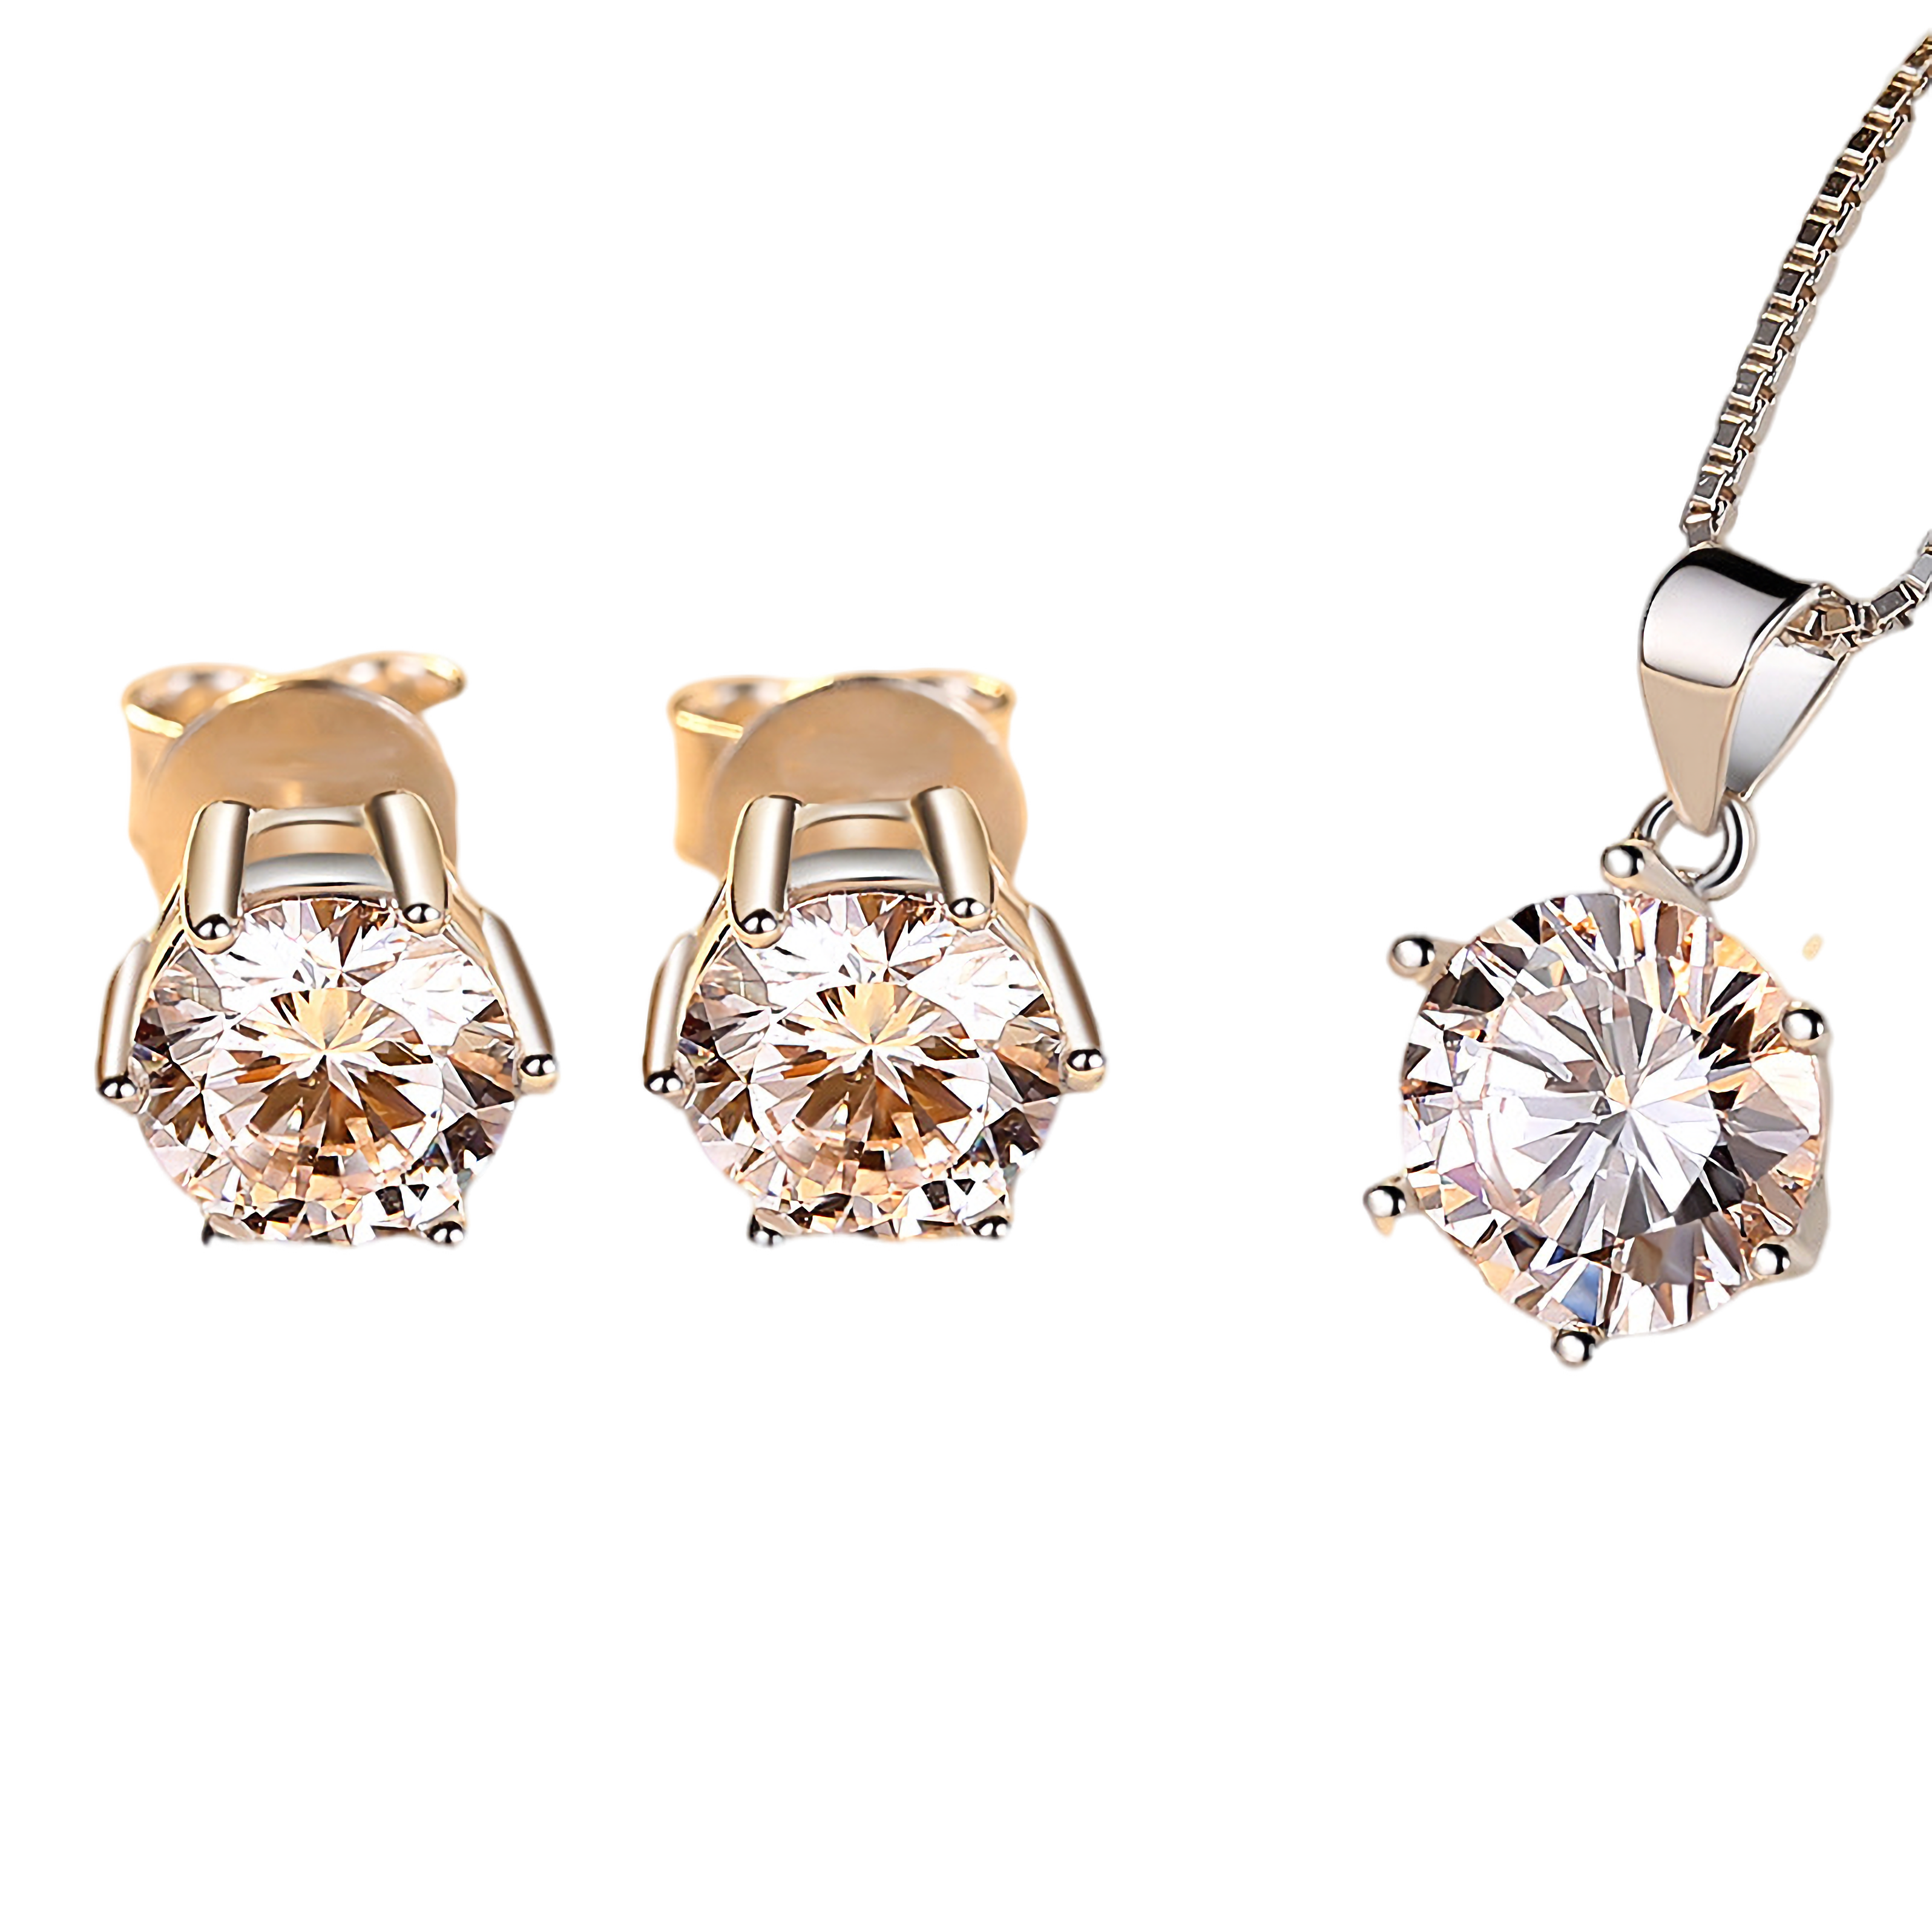 J1292 1 Carat Moissanite Earrings Pendant Necklace Set, Moissanite Diamond, Sterling Silver With 18K White Gold Plating, Handmade